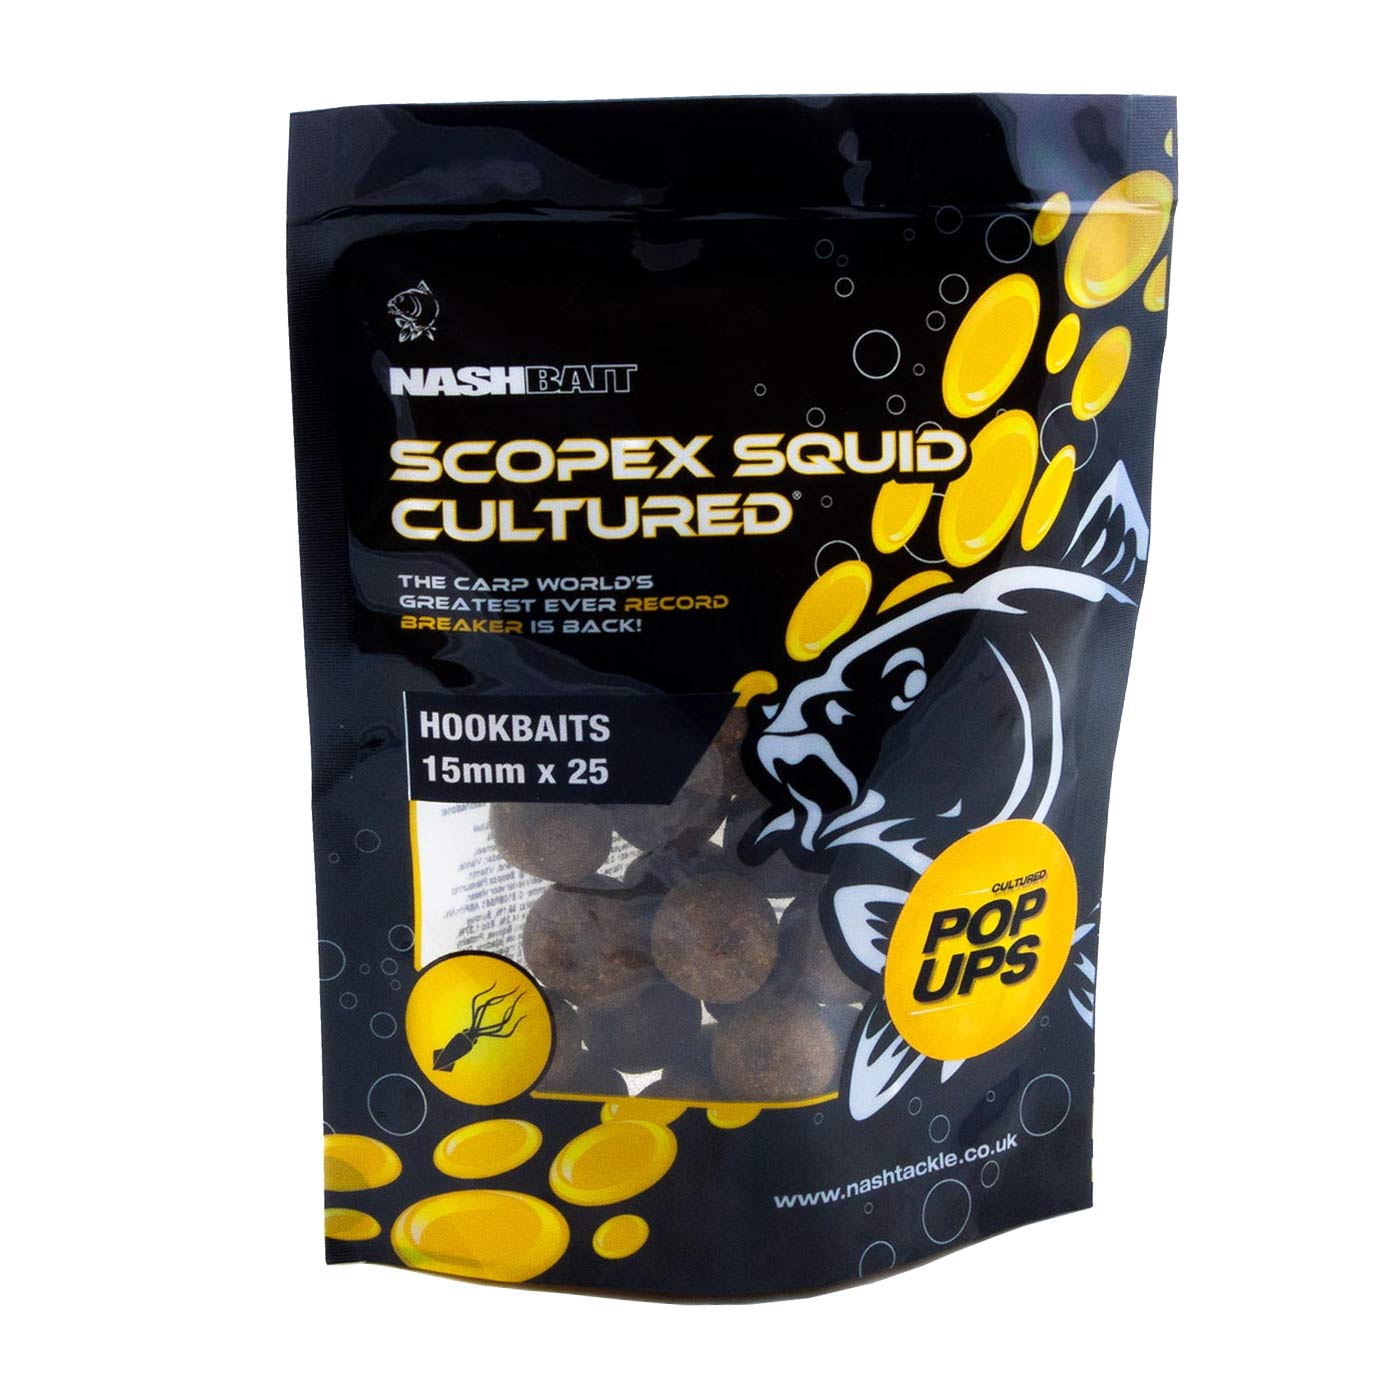 Scopex Squid Cultured Popups